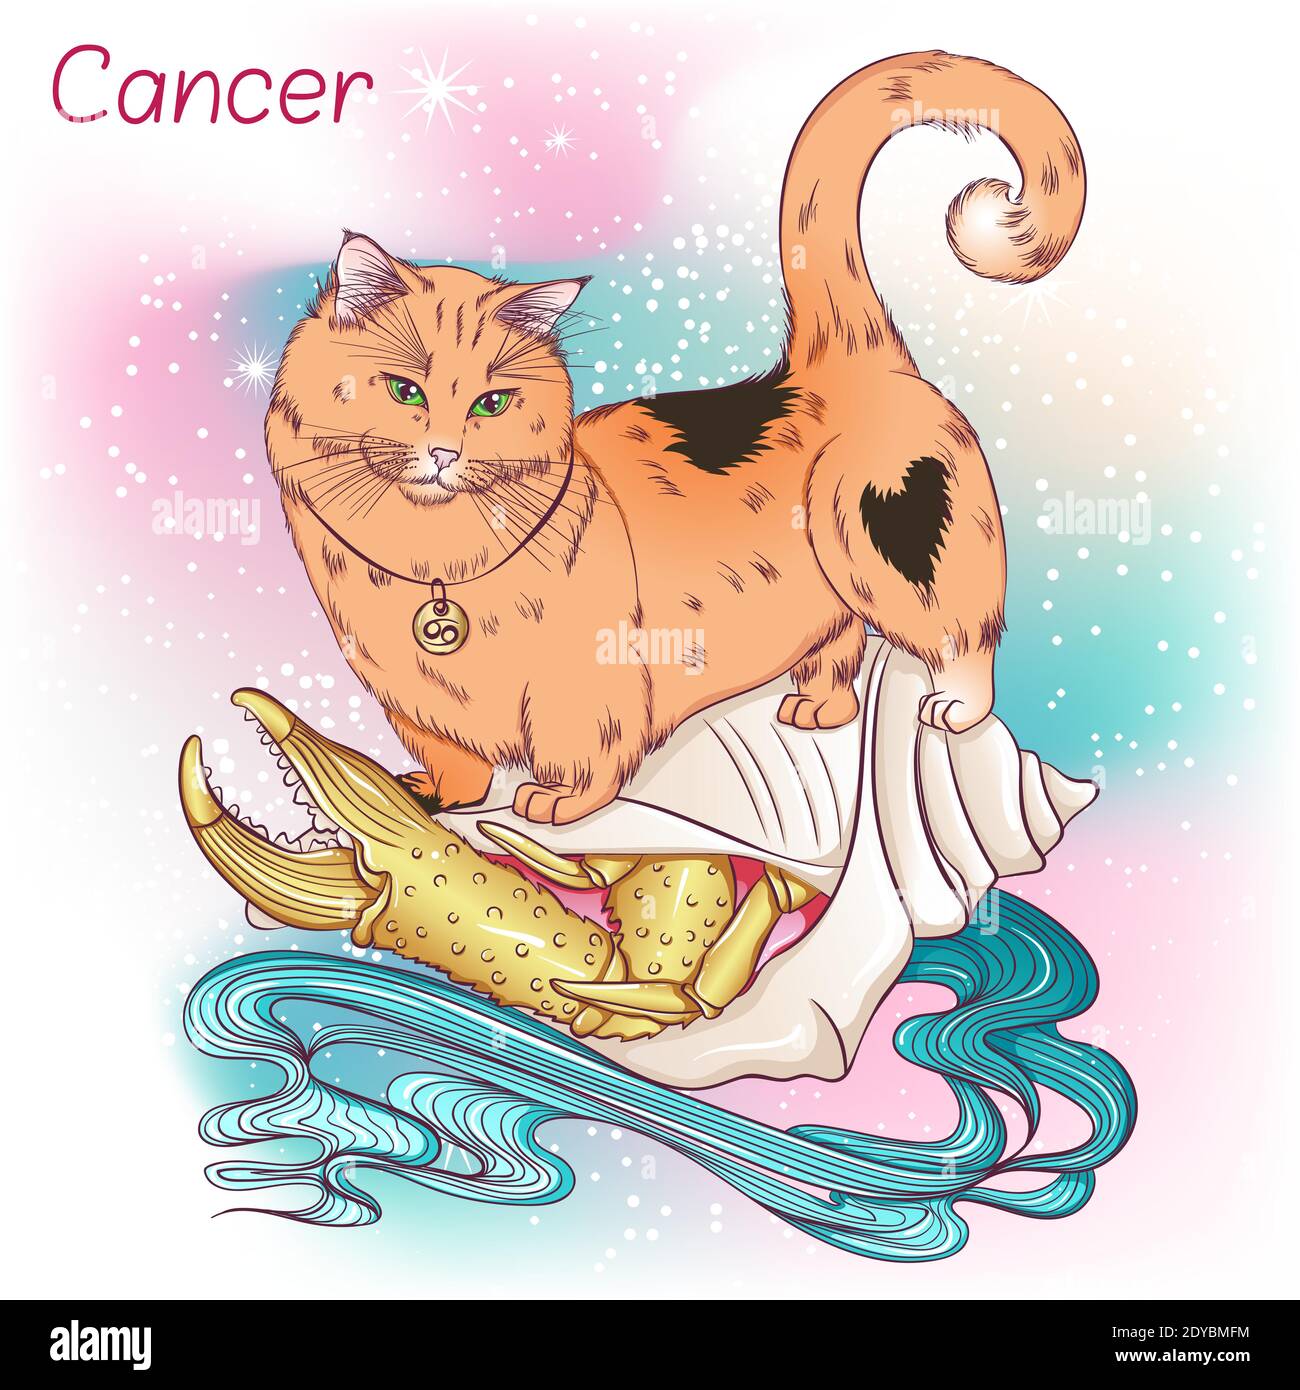 Zodiaque. Illustration vectorielle du signe astrologique du cancer en tant que chat de race Munchkin regardant vers le bas. Élément d'horoscope astrologique. Art de concept d'astrologie Illustration de Vecteur